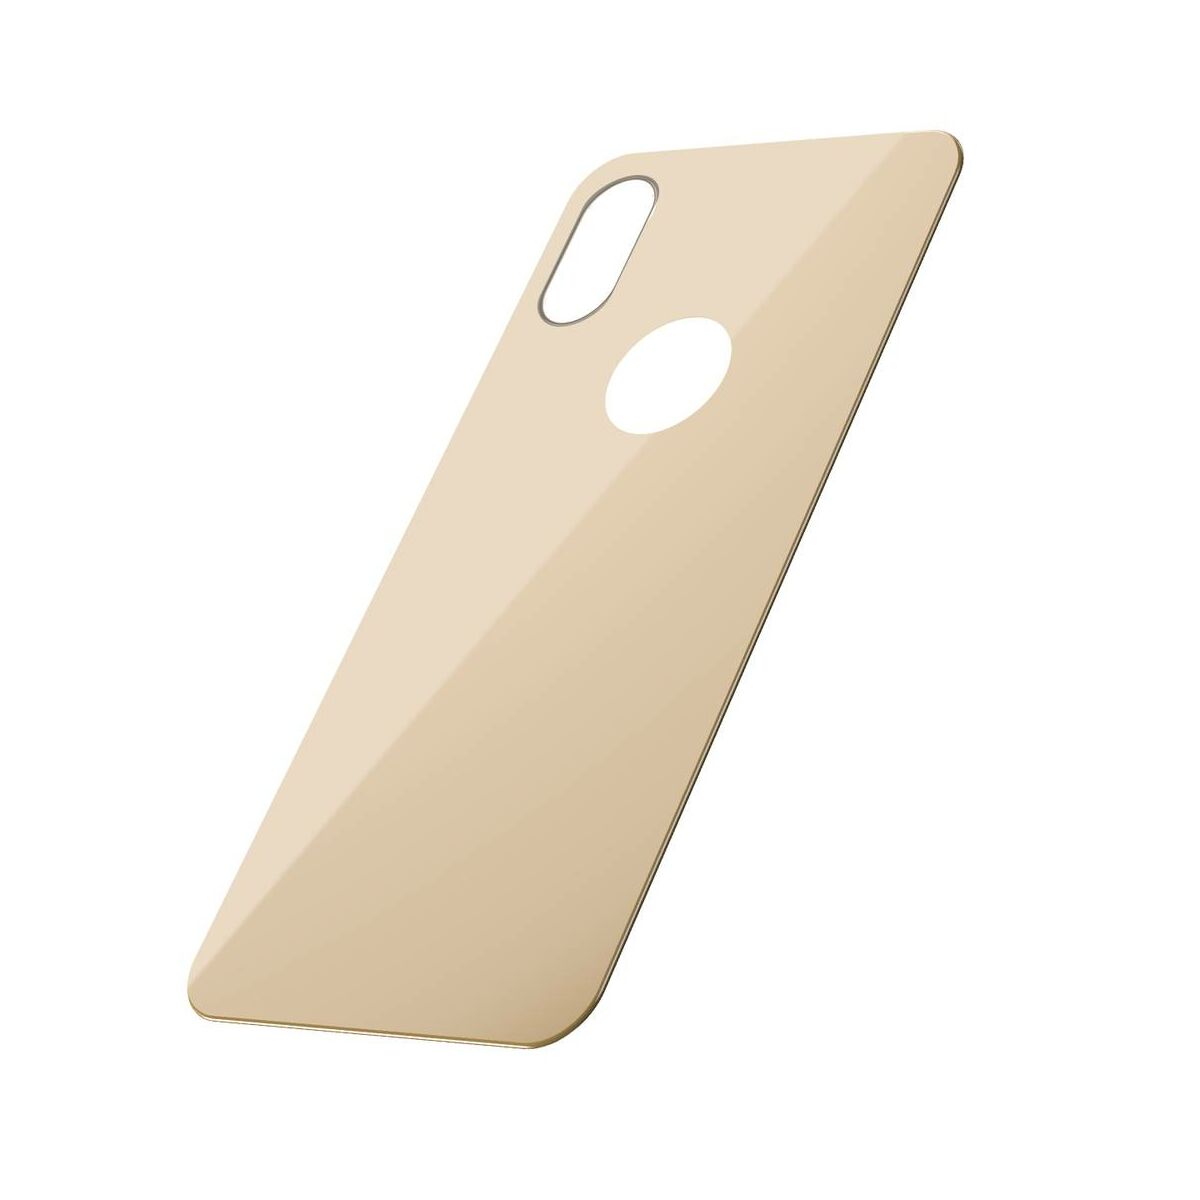 Kép 3/8 - Baseus iPhone XS (5.8") 0.3 mm, teljes lefedésre edzett üveg hátlap védő fólia, arany (SGAPIPH58-BM0V)